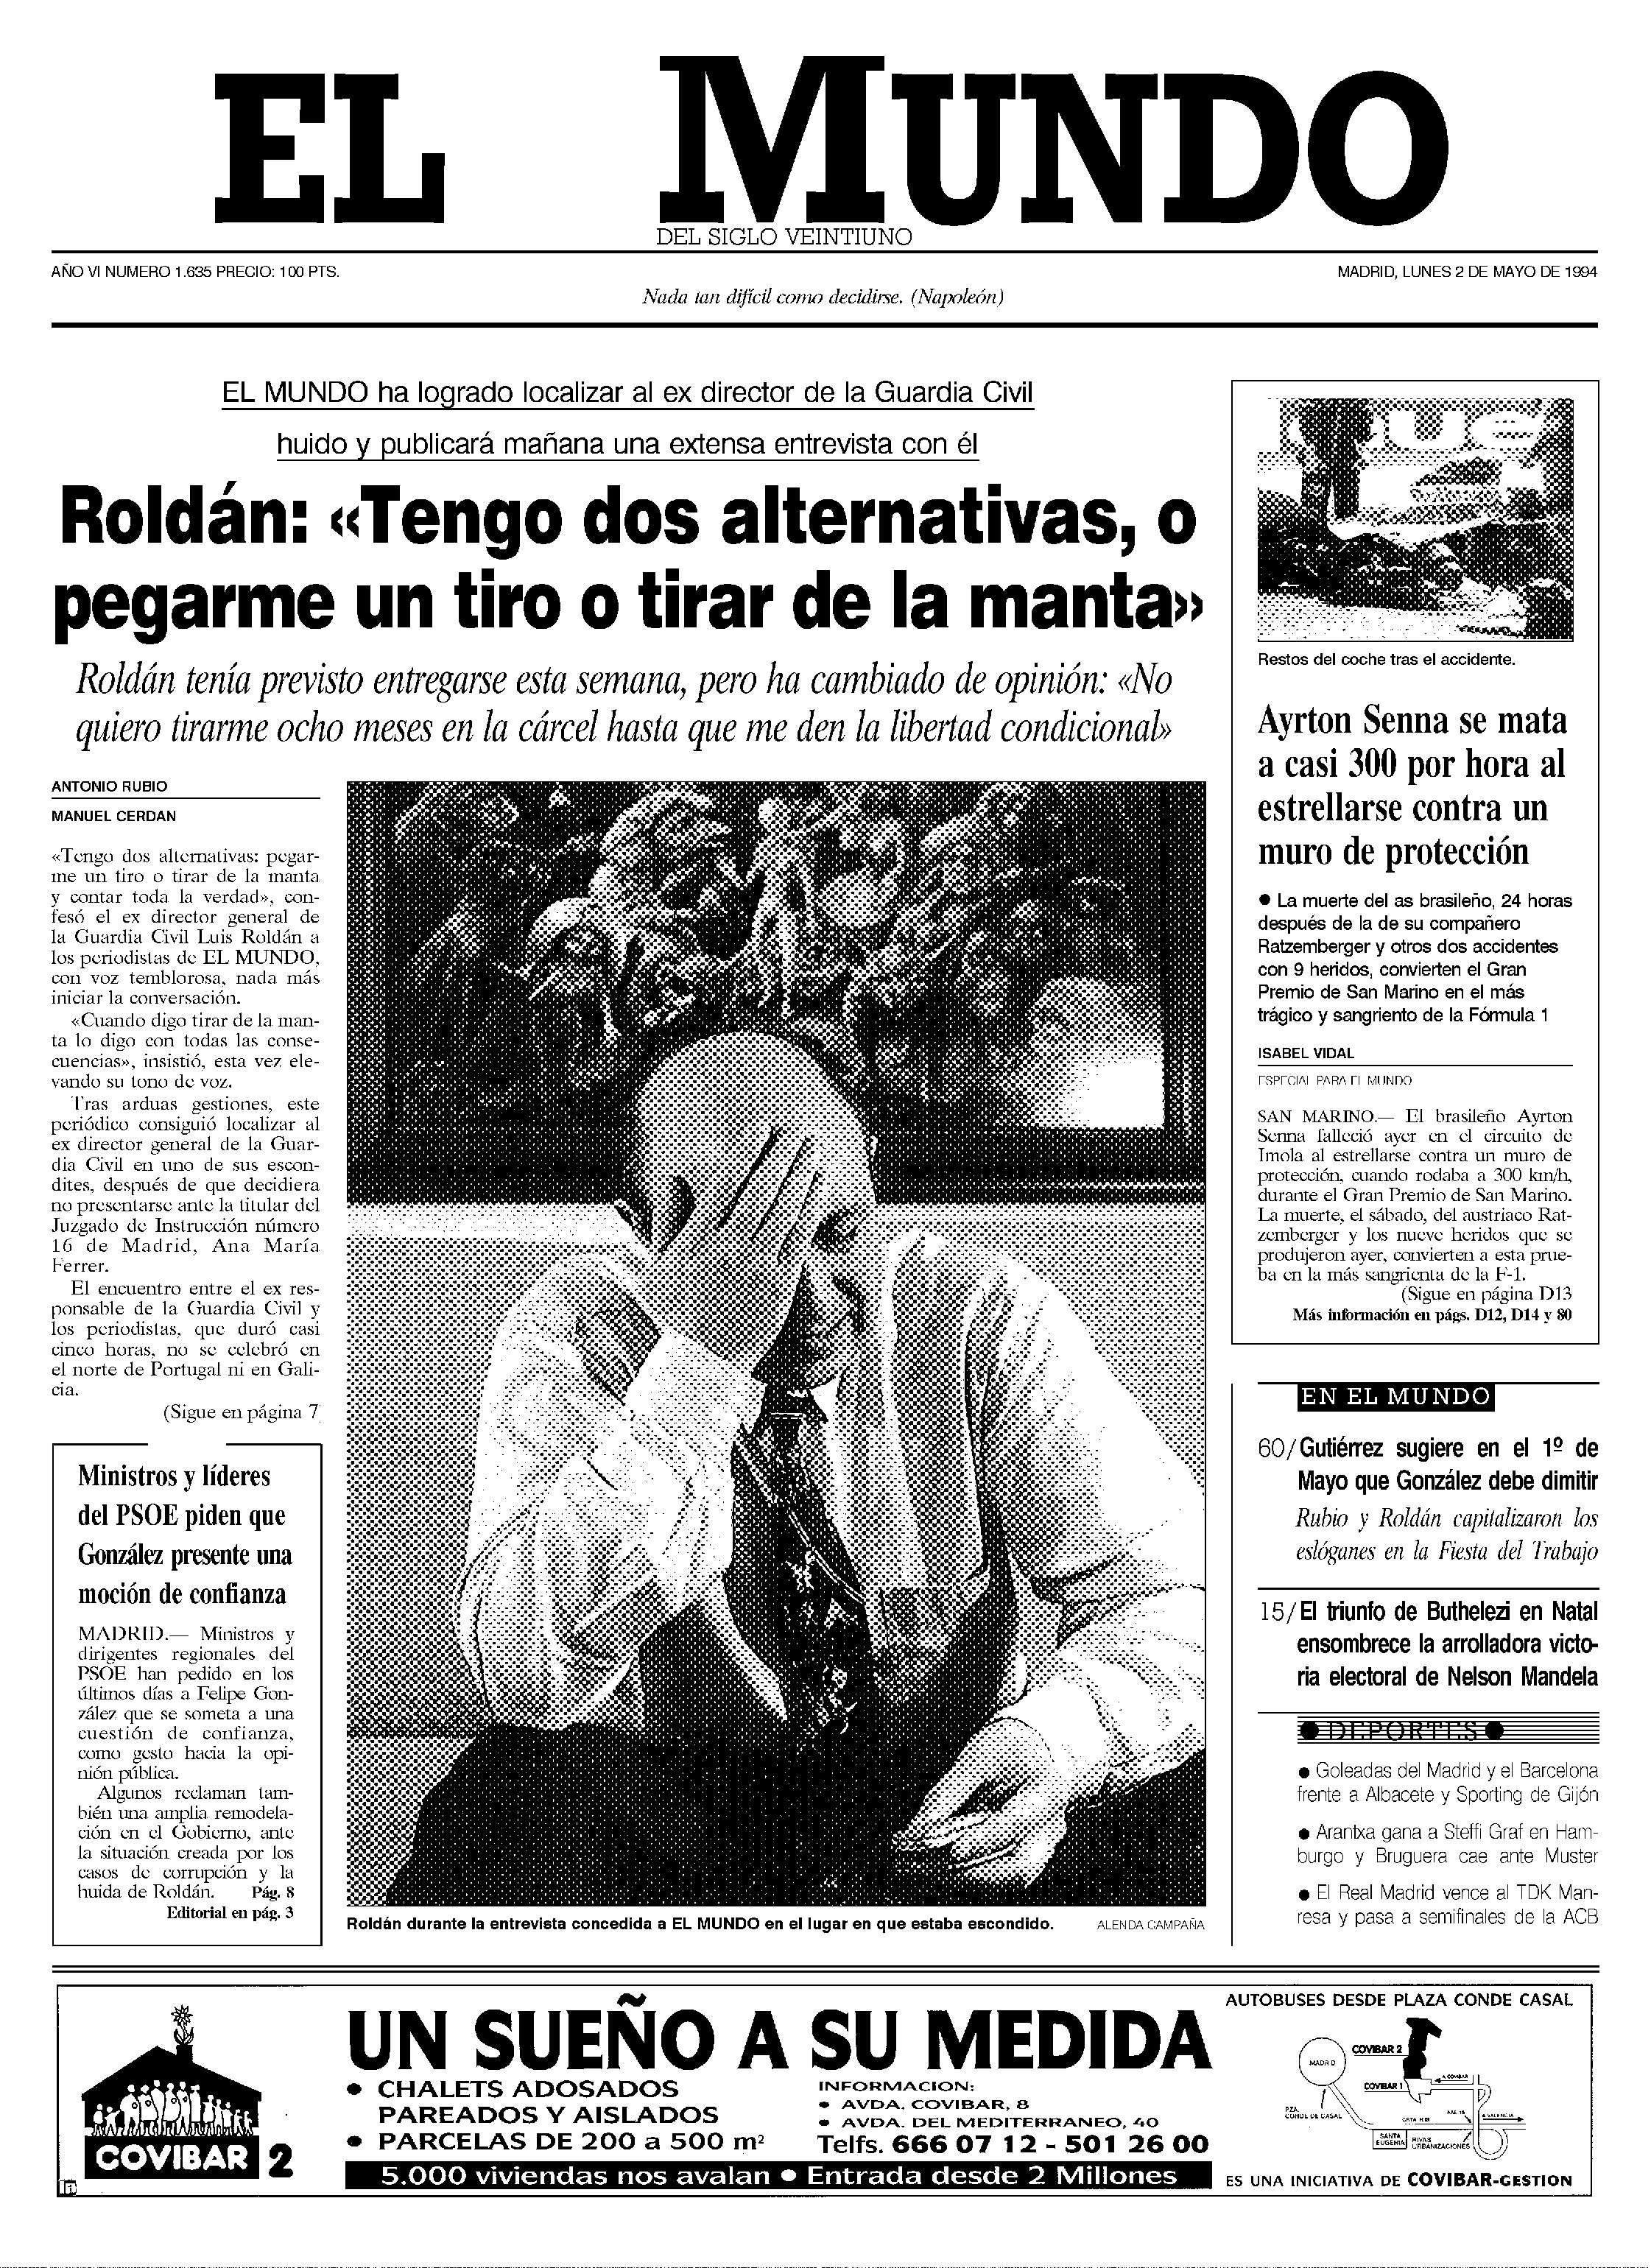 Portada de EL MUNDO del 2 de mayo de 1994, con la entrevista a Luis Roldn en su escondite de Pars.